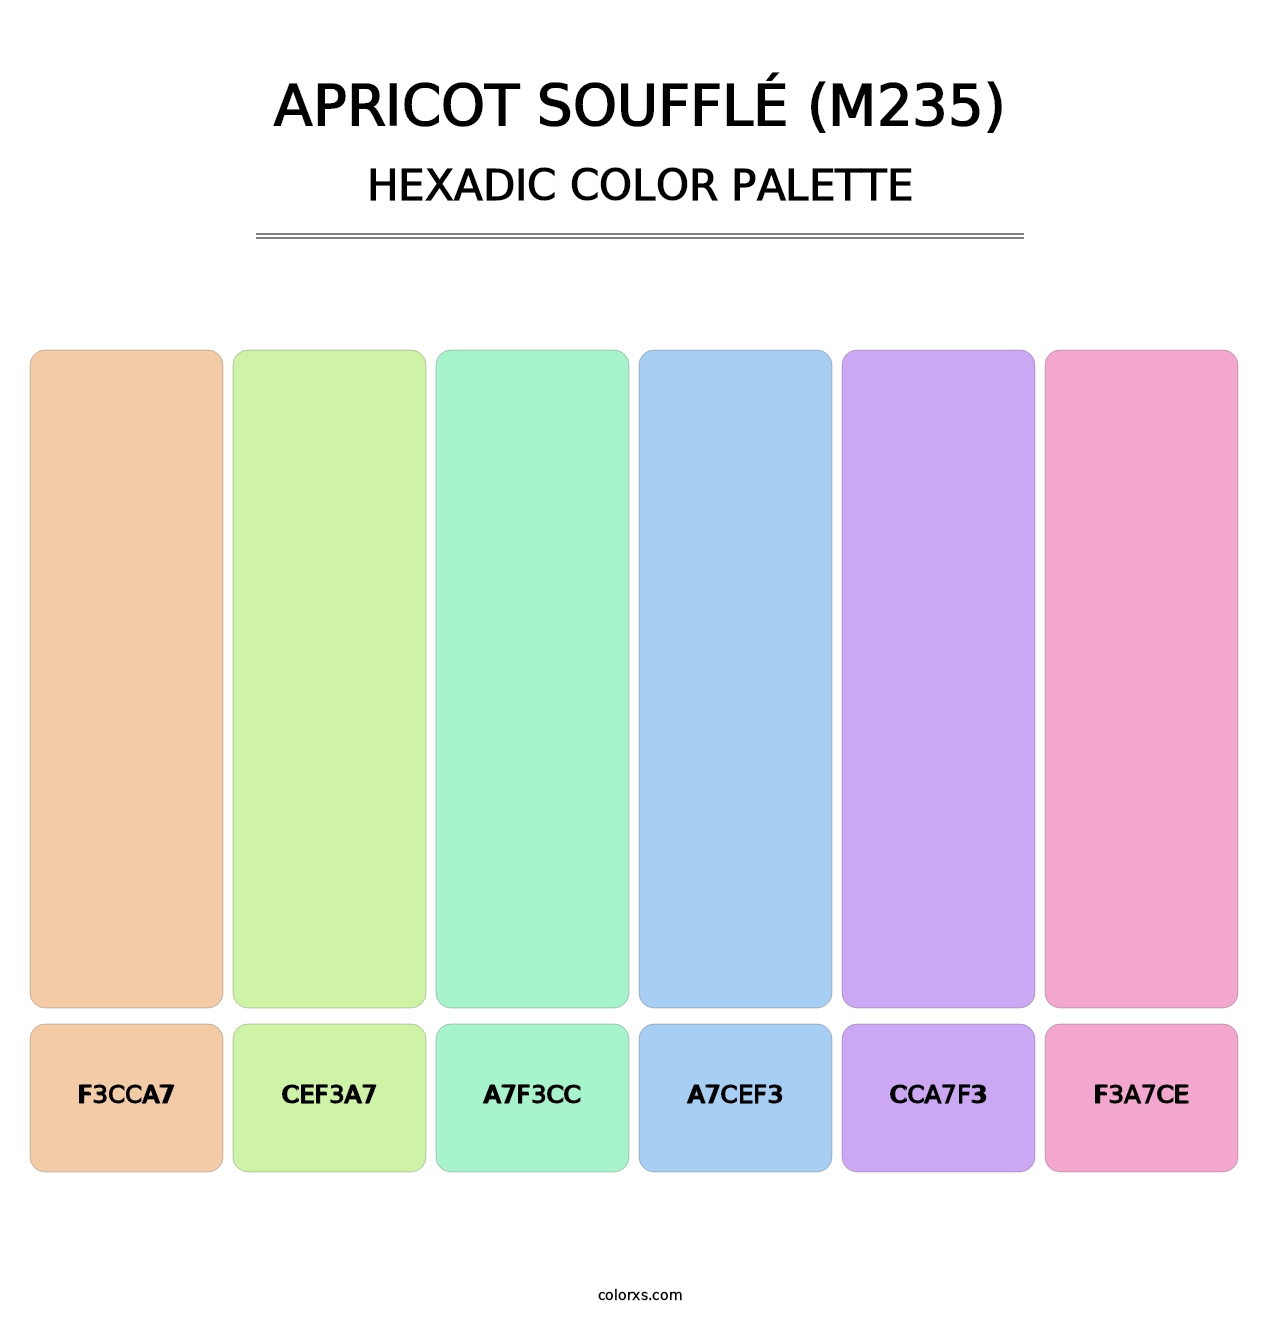 Apricot Soufflé (M235) - Hexadic Color Palette